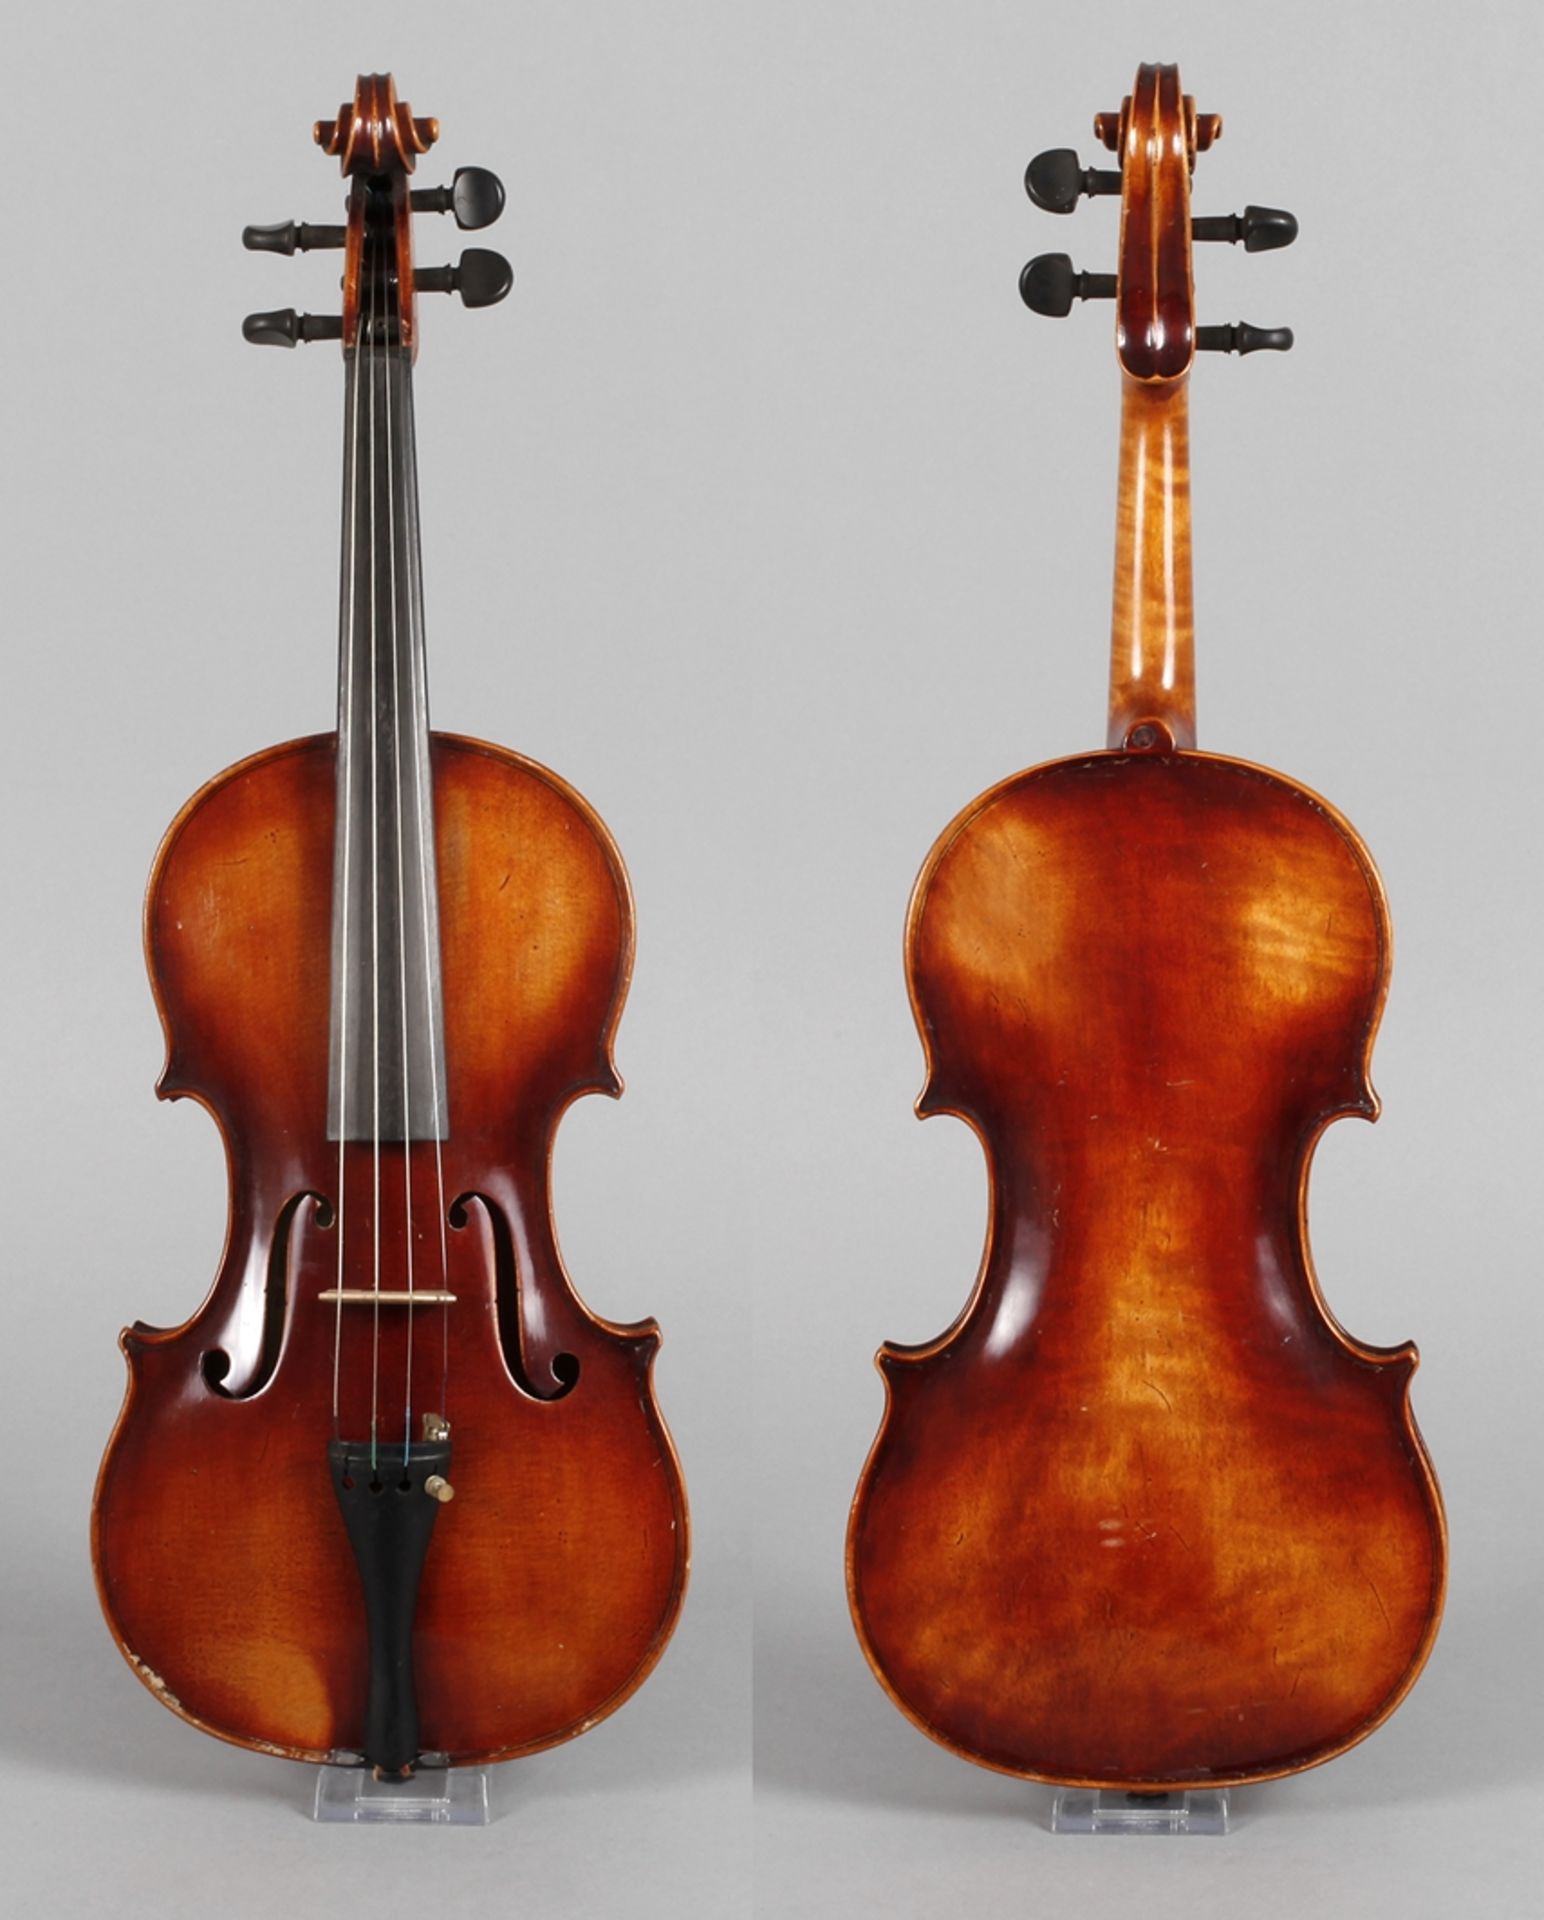 Violineauf Klebezettel bezeichnet M. Krauss Streich- u. Zupfinstrumentenbau Landshut und datiert